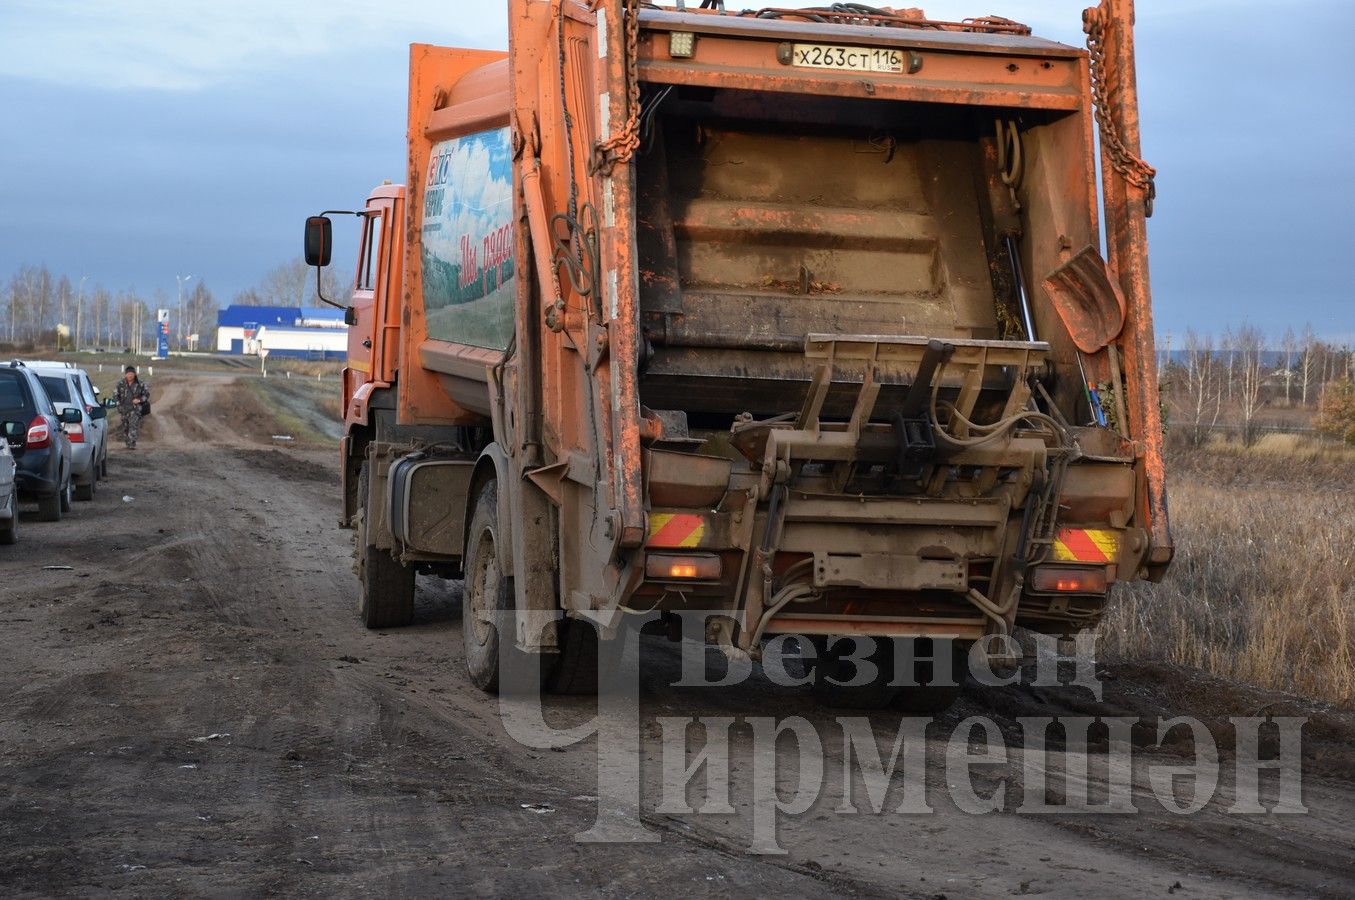 Вячеслав Тимофеев: «Памятник мусоросборщику? Нет, это будет слишком»